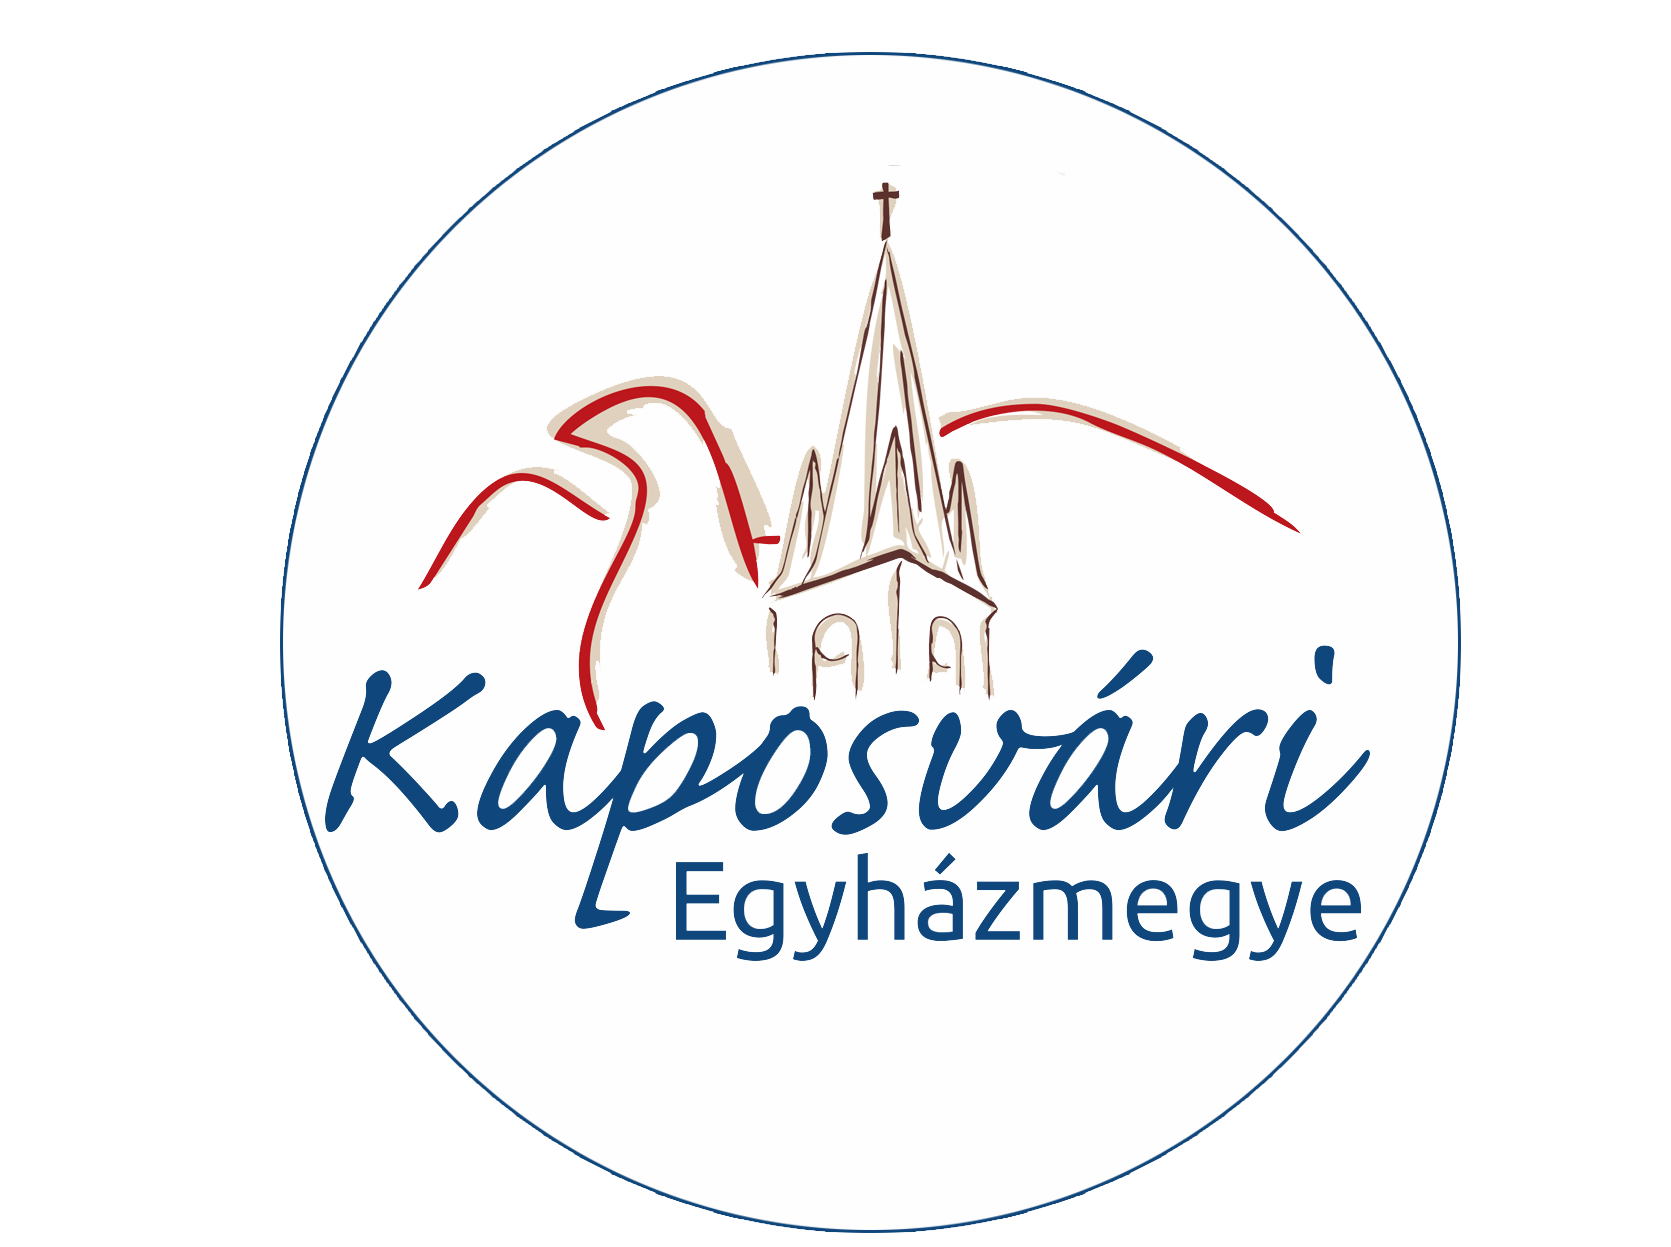 Kaposvári Egyházmegye